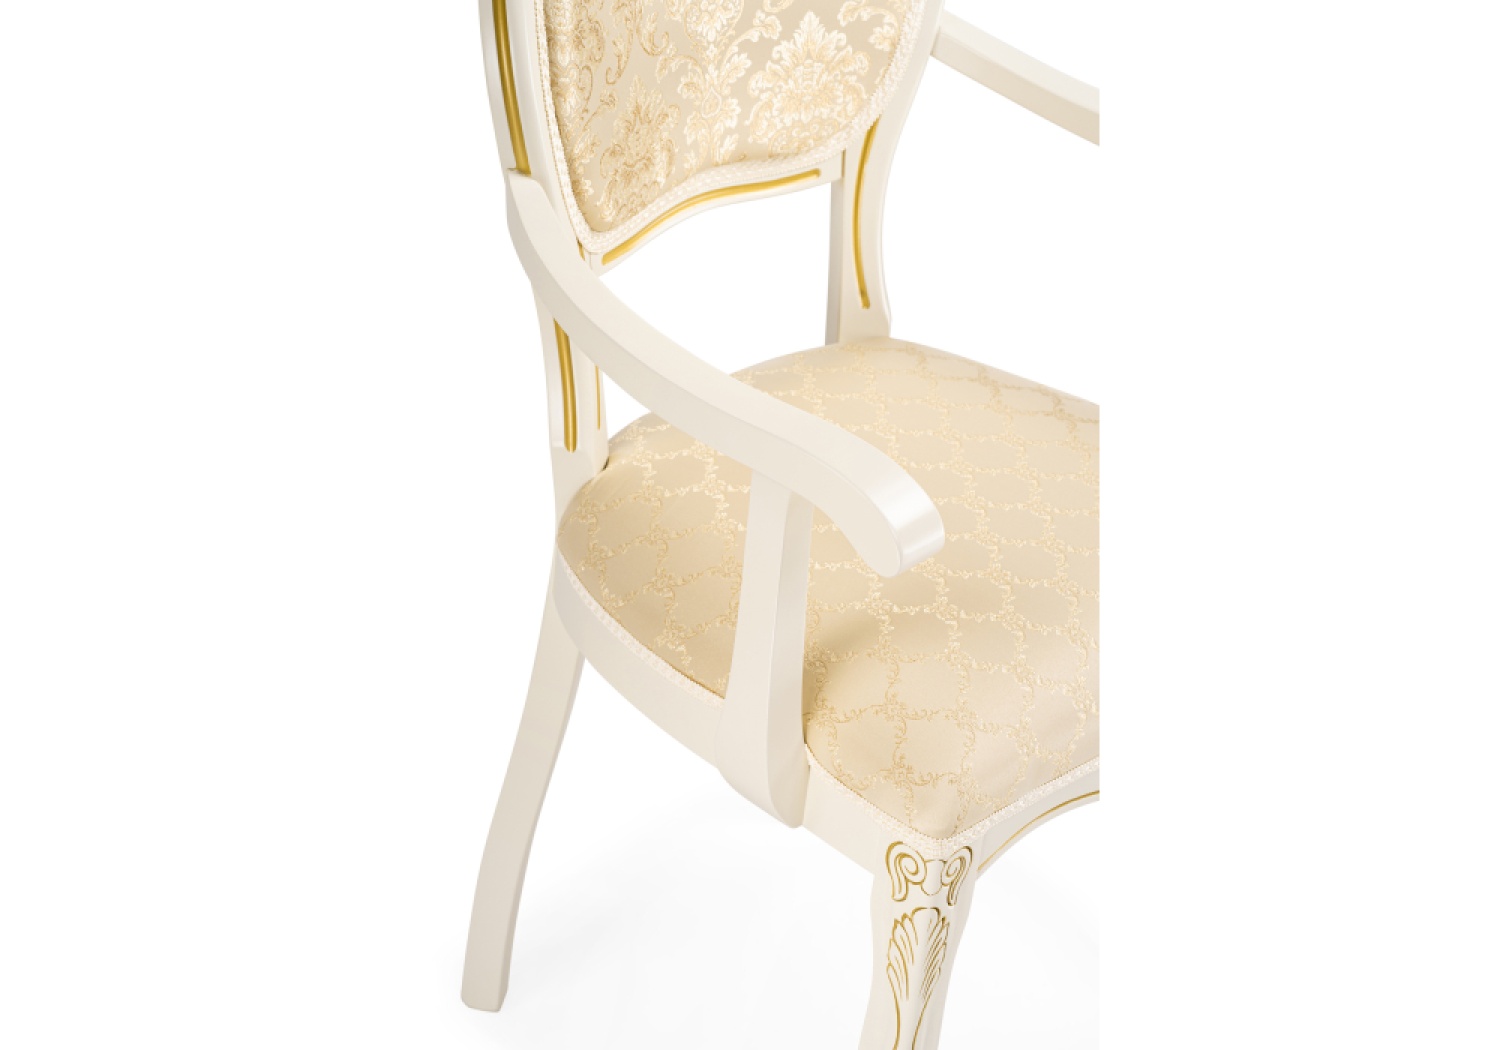 Деревянный стул Лауро слоновая кость с золотой патиной / бежевый